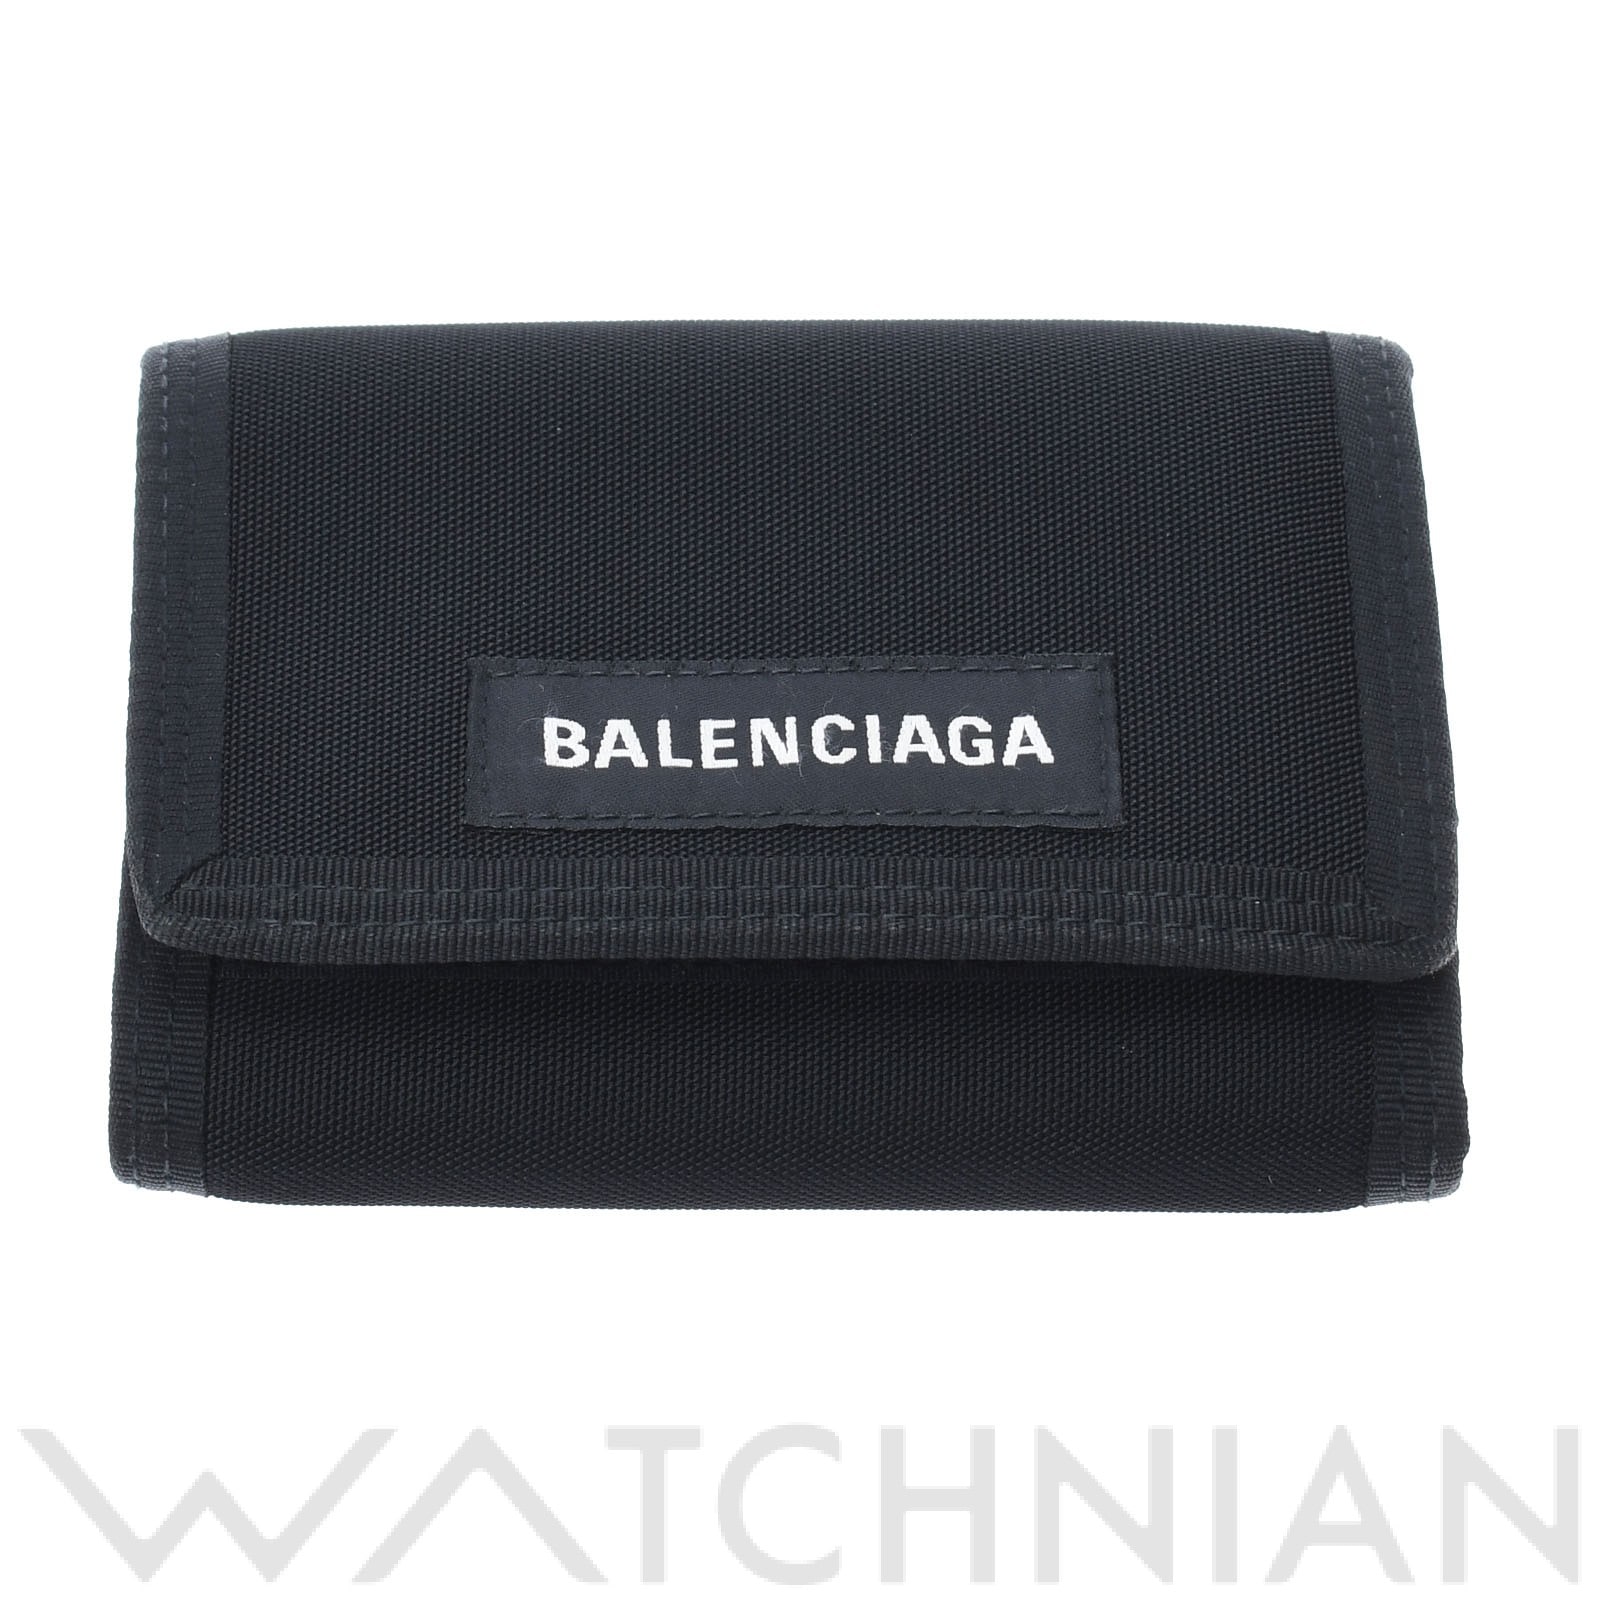 新品【 Balenciaga 】 Explorer Wallet 財布 ブルー